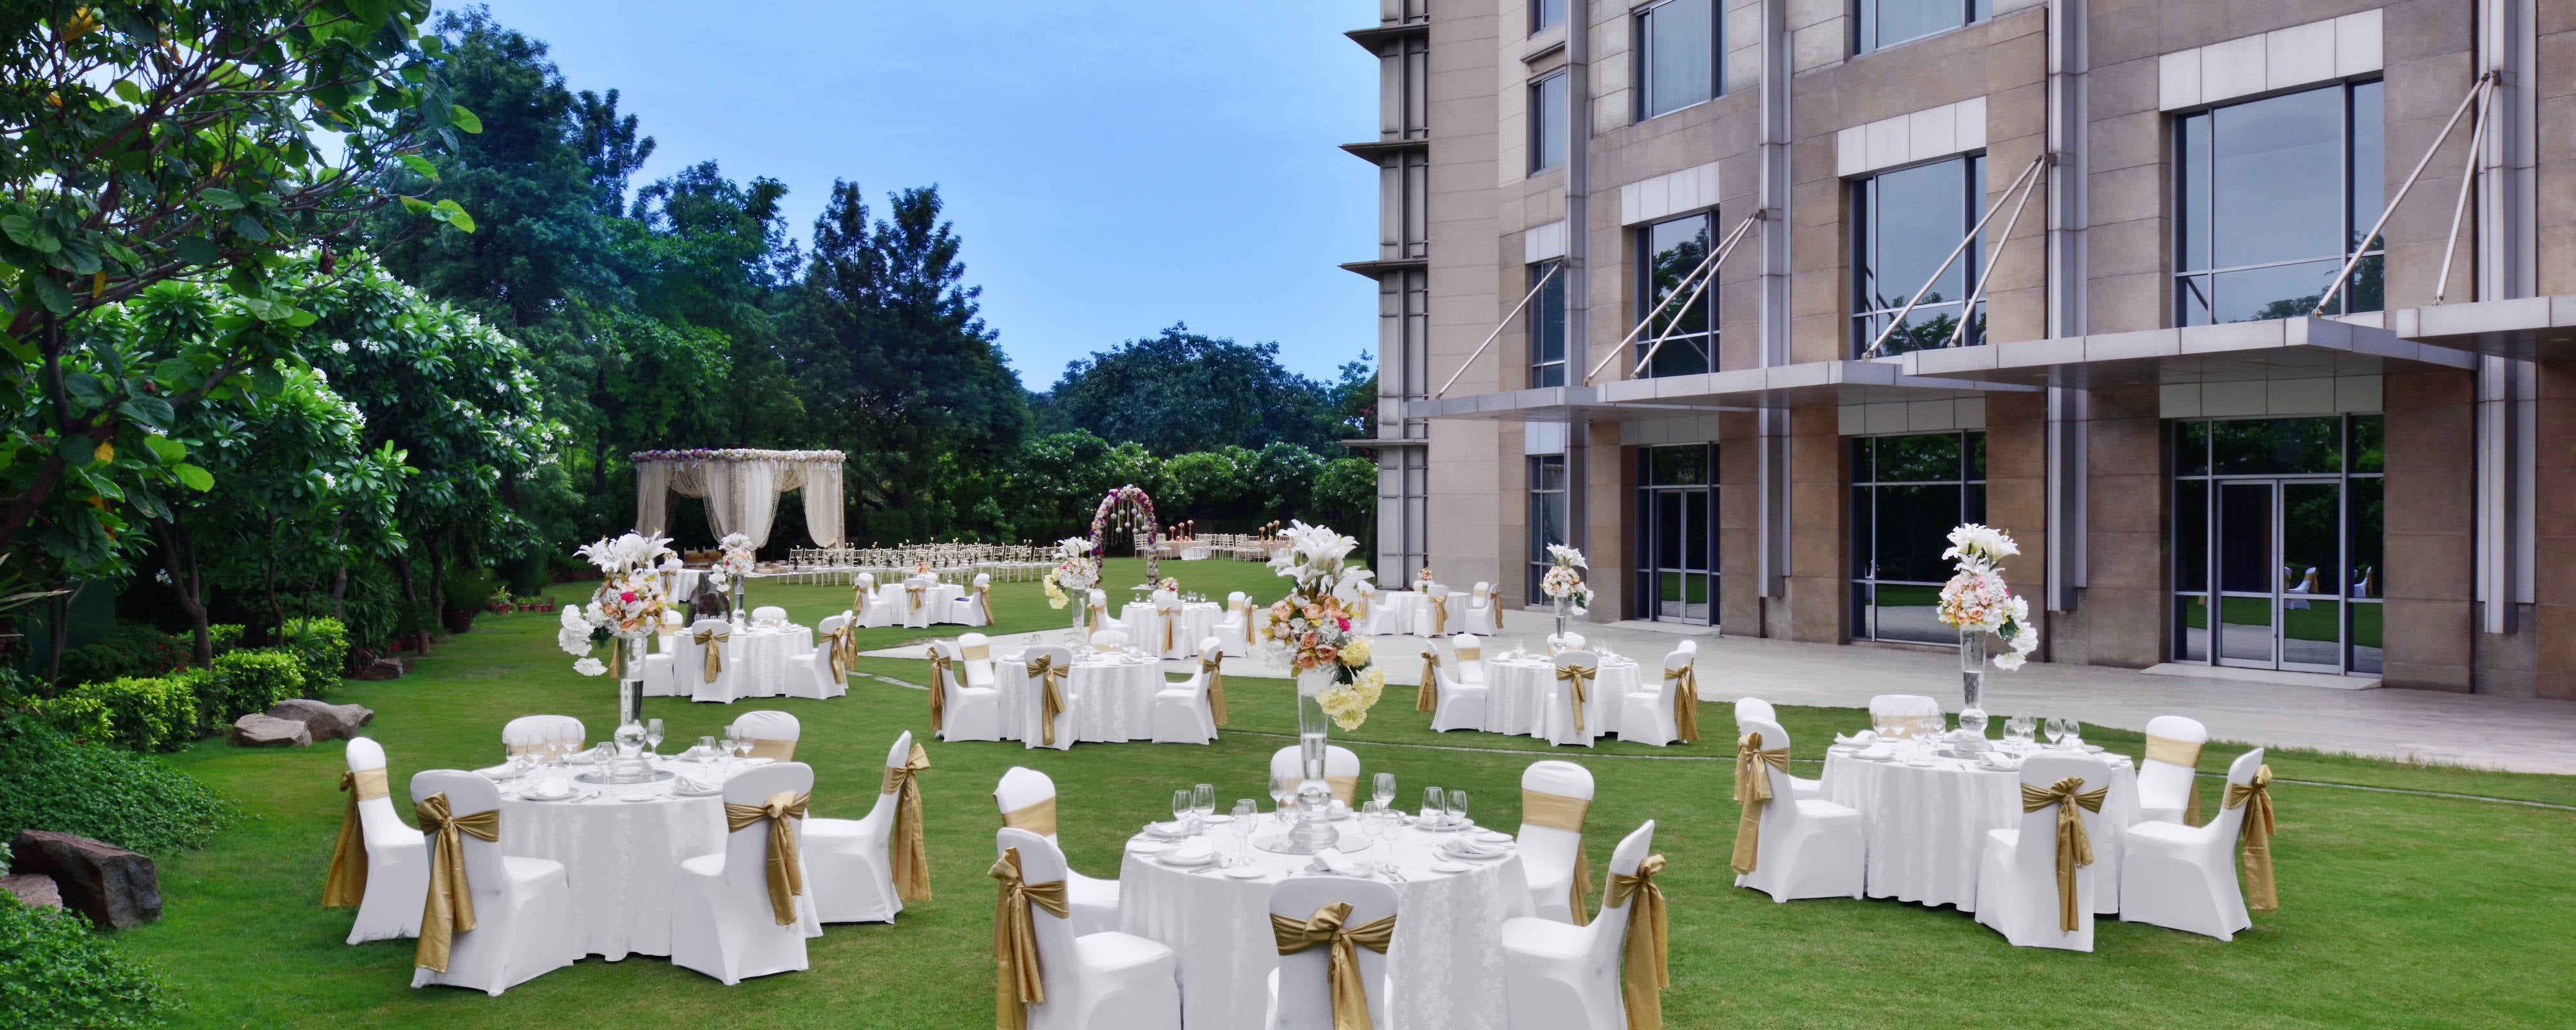 Banquet Halls in Chandigarh and Wedding Venues | JW Marriott Hotel Chandigarh